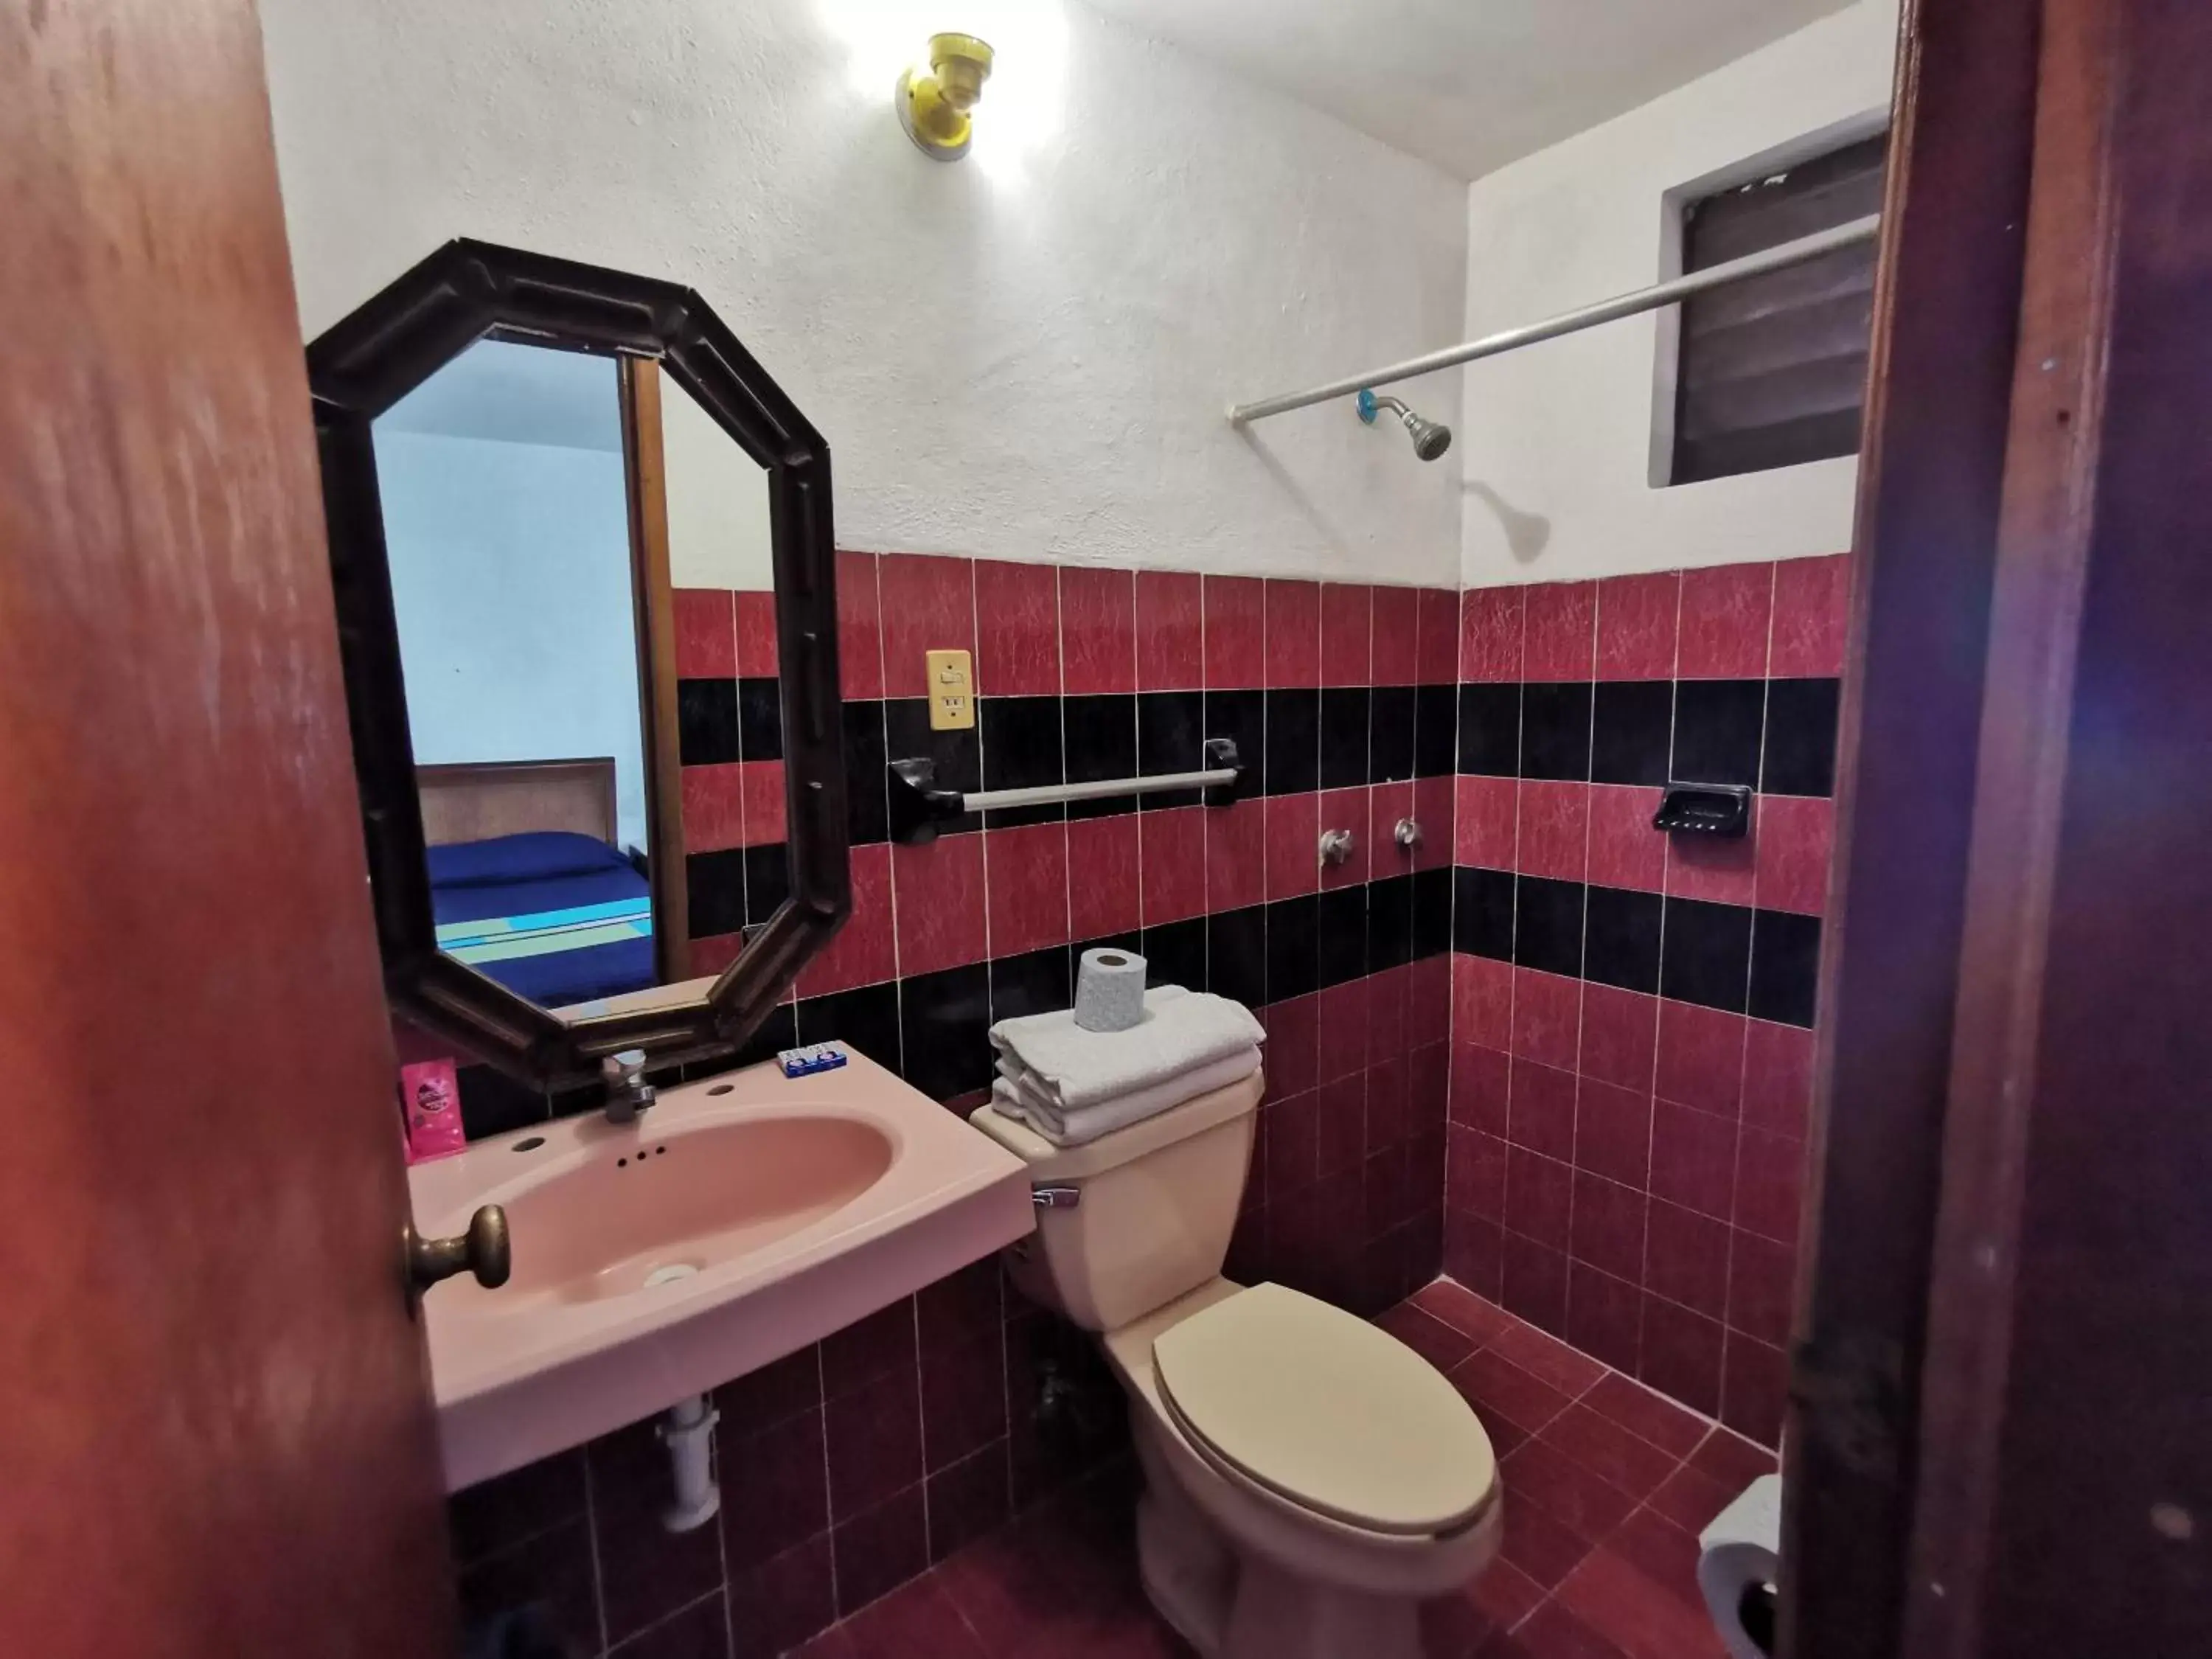 Bathroom in Hotel Doralba Inn